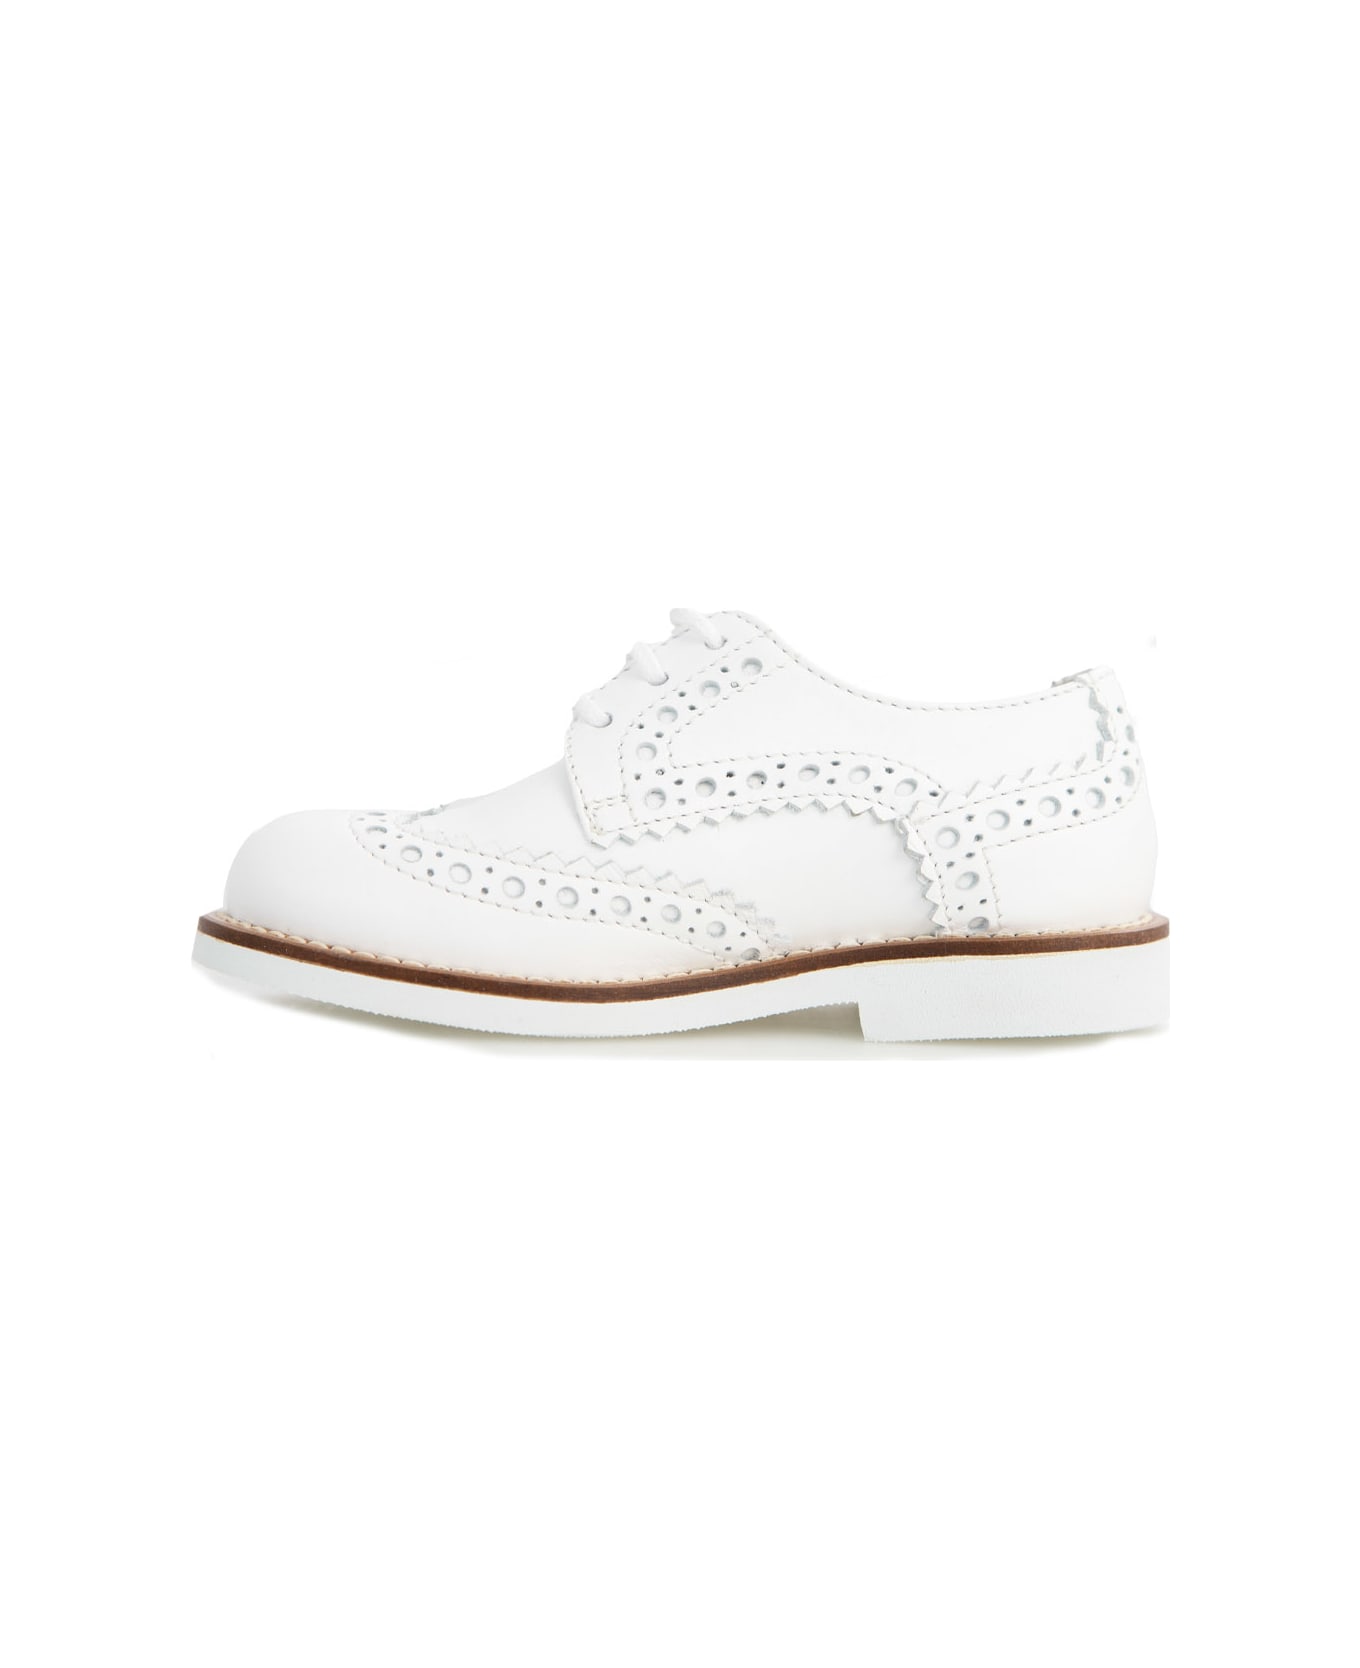 Andrea Montelpare Leather Shoe - White